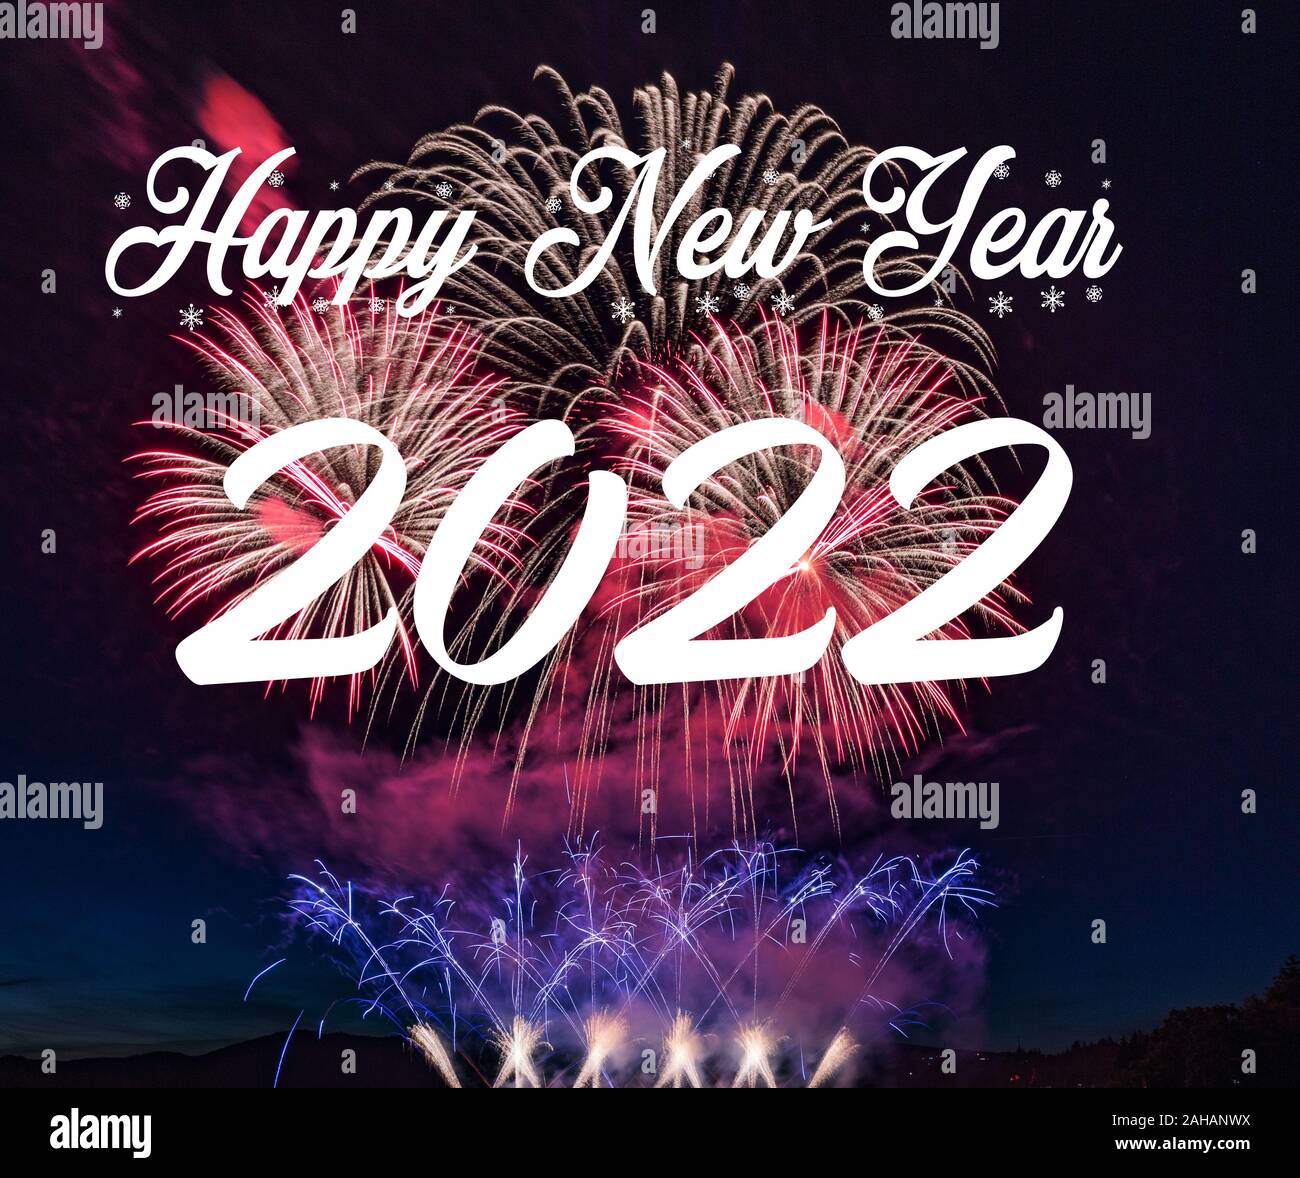 rivers casino rosemont new years eve 2020